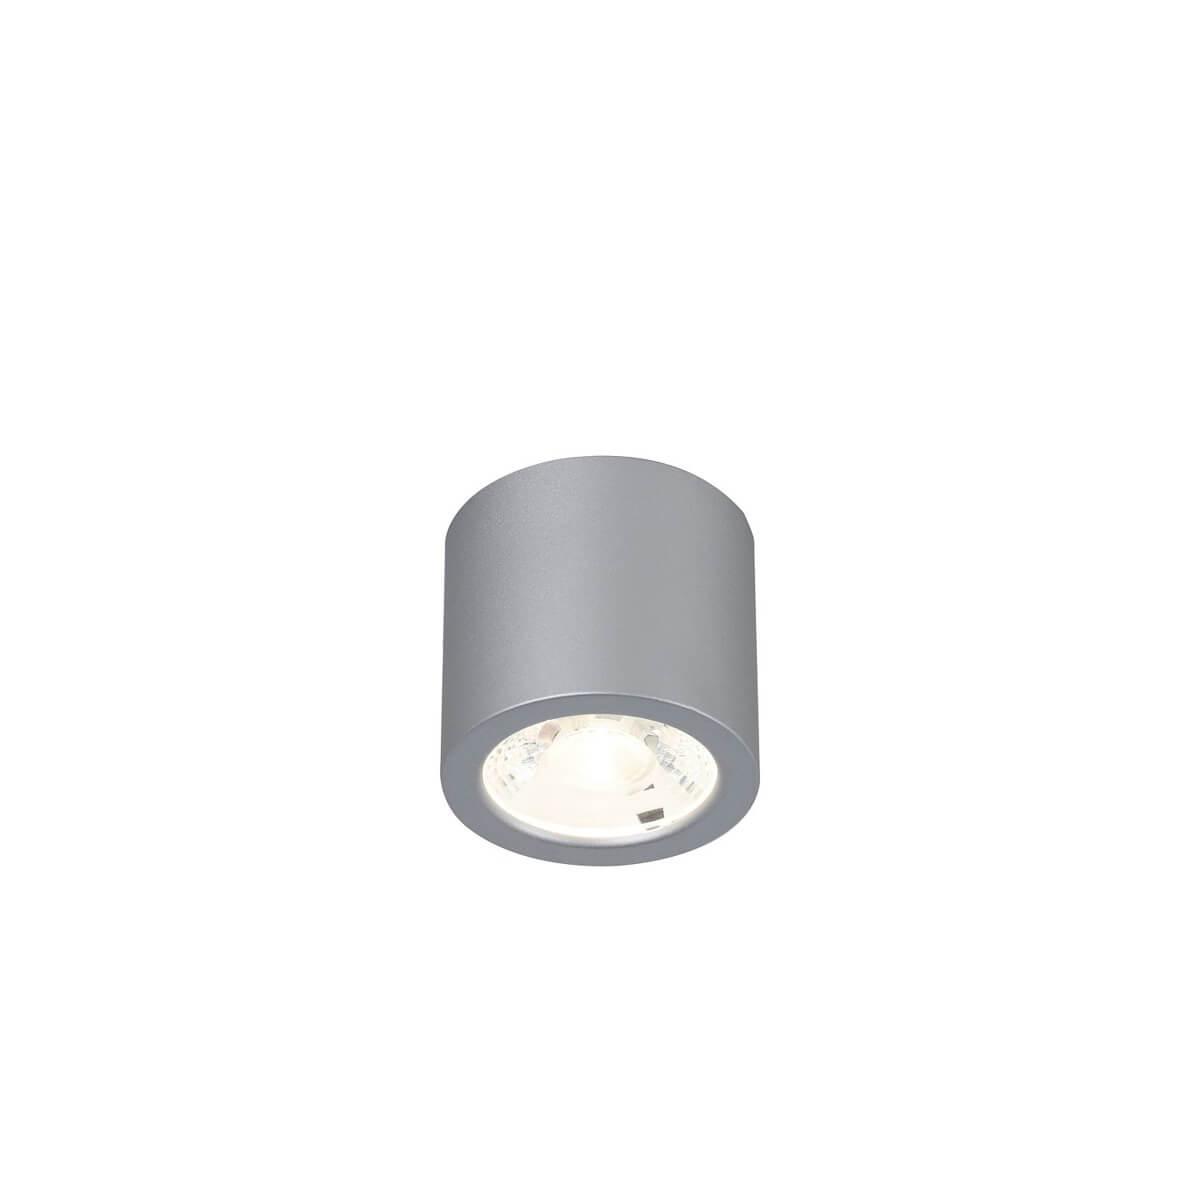 Потолочный светодиодный светильник Favourite Deorsum 2808-1C потолочный светильник deorsum led 7вт